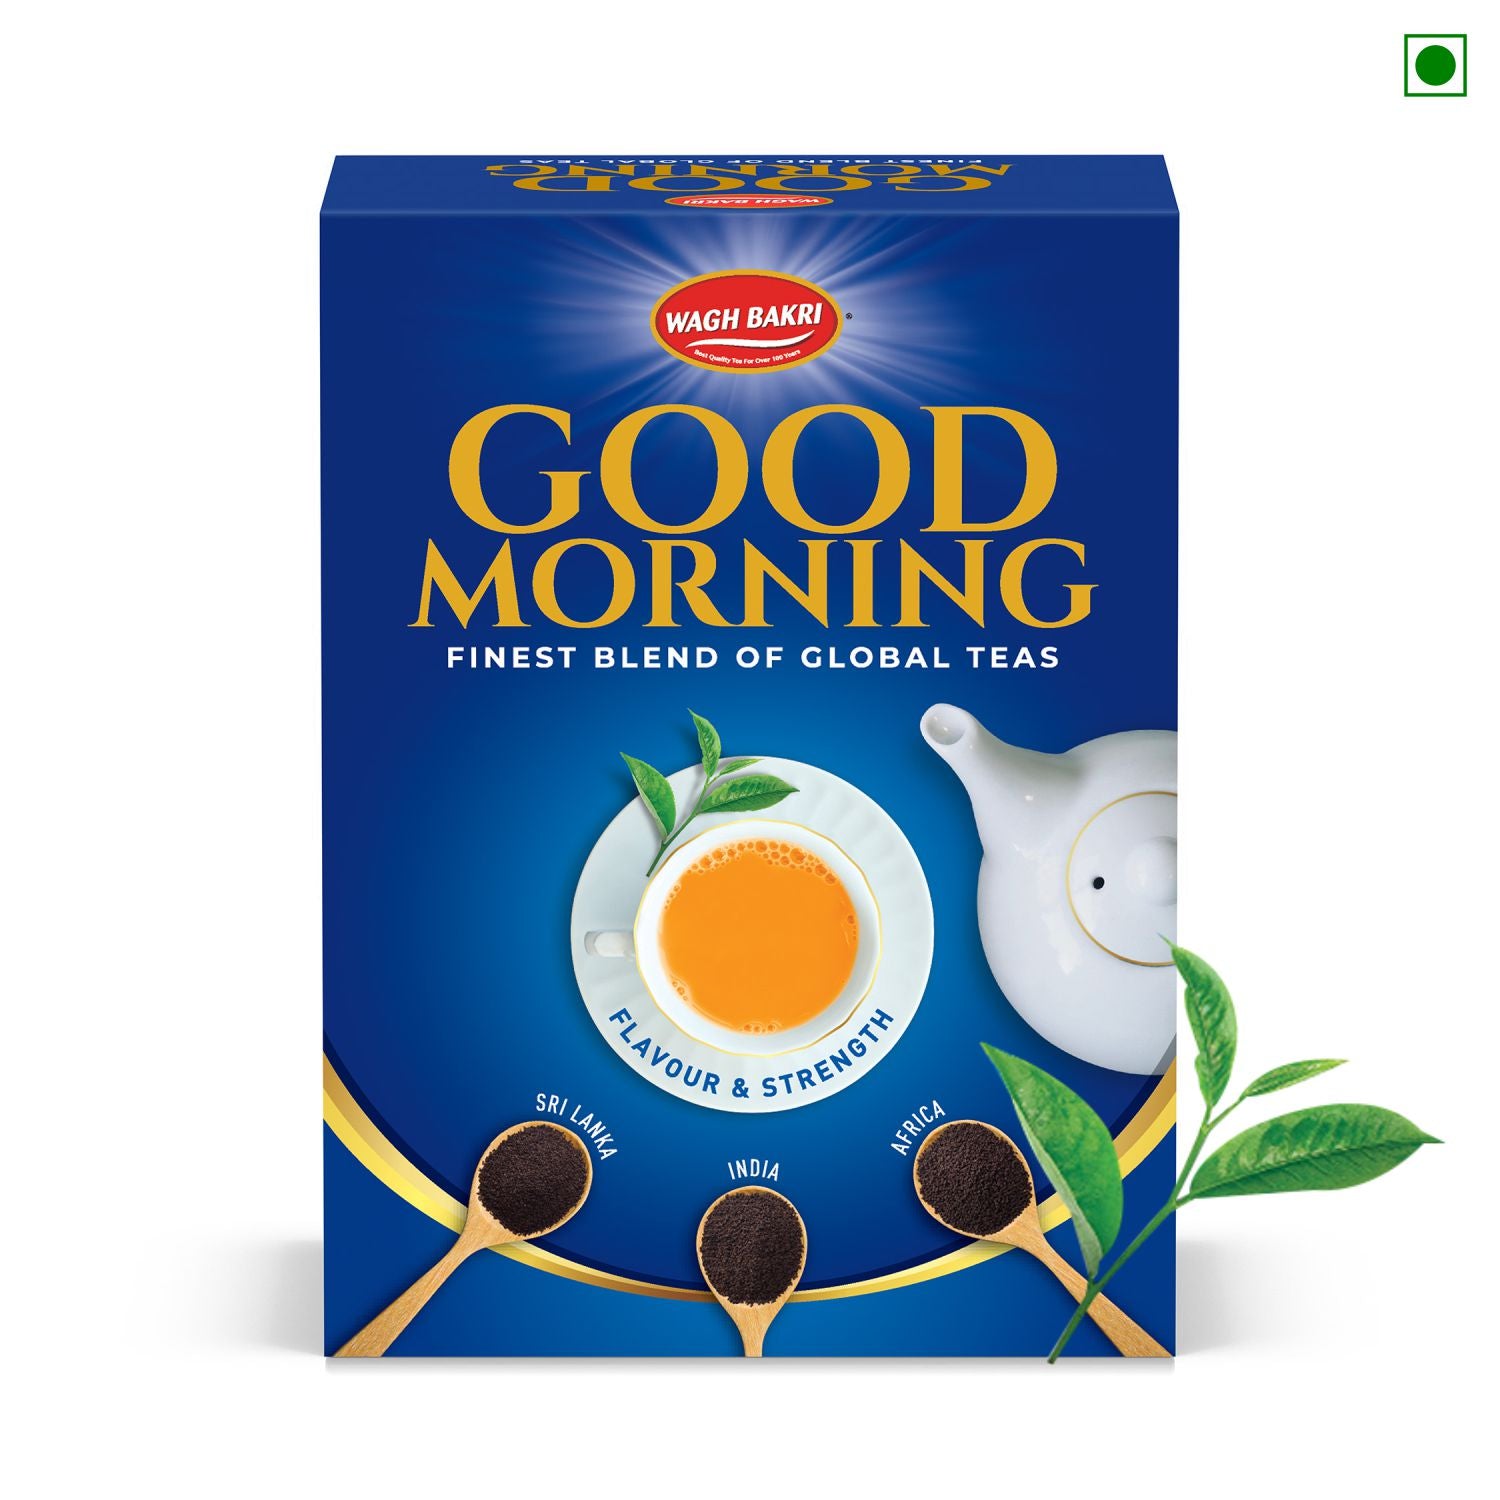 Good Morning Premium Tea